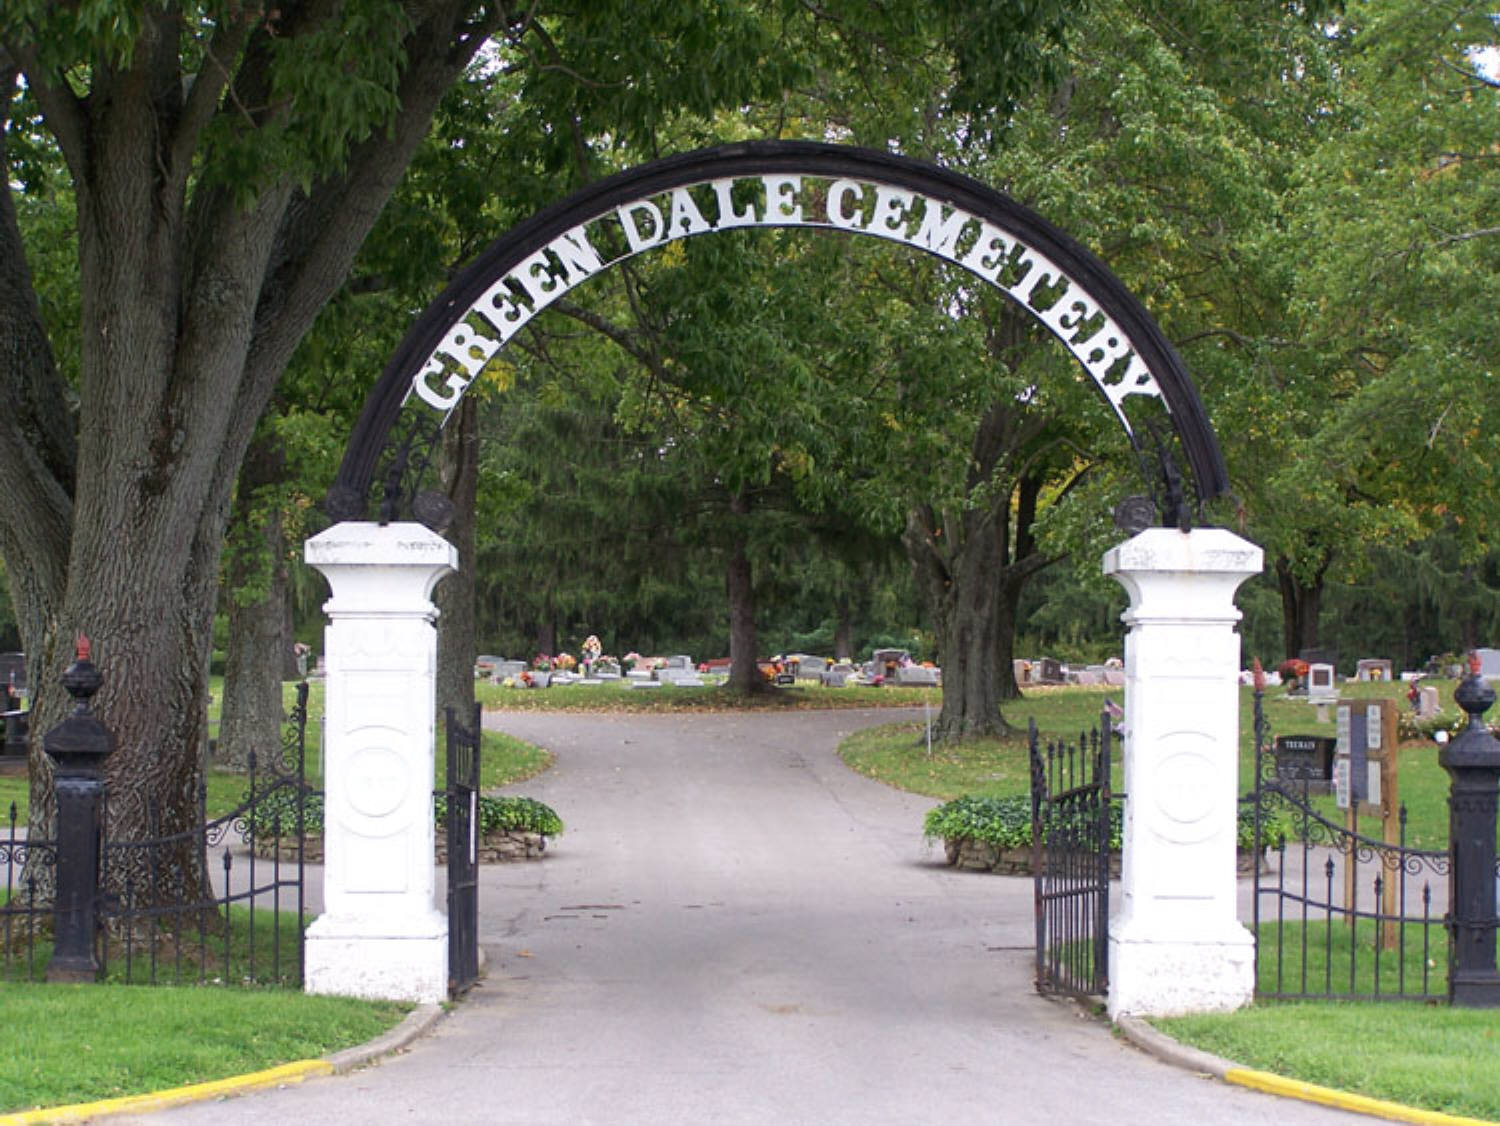 Greendale AKA Green Dale Cemetery